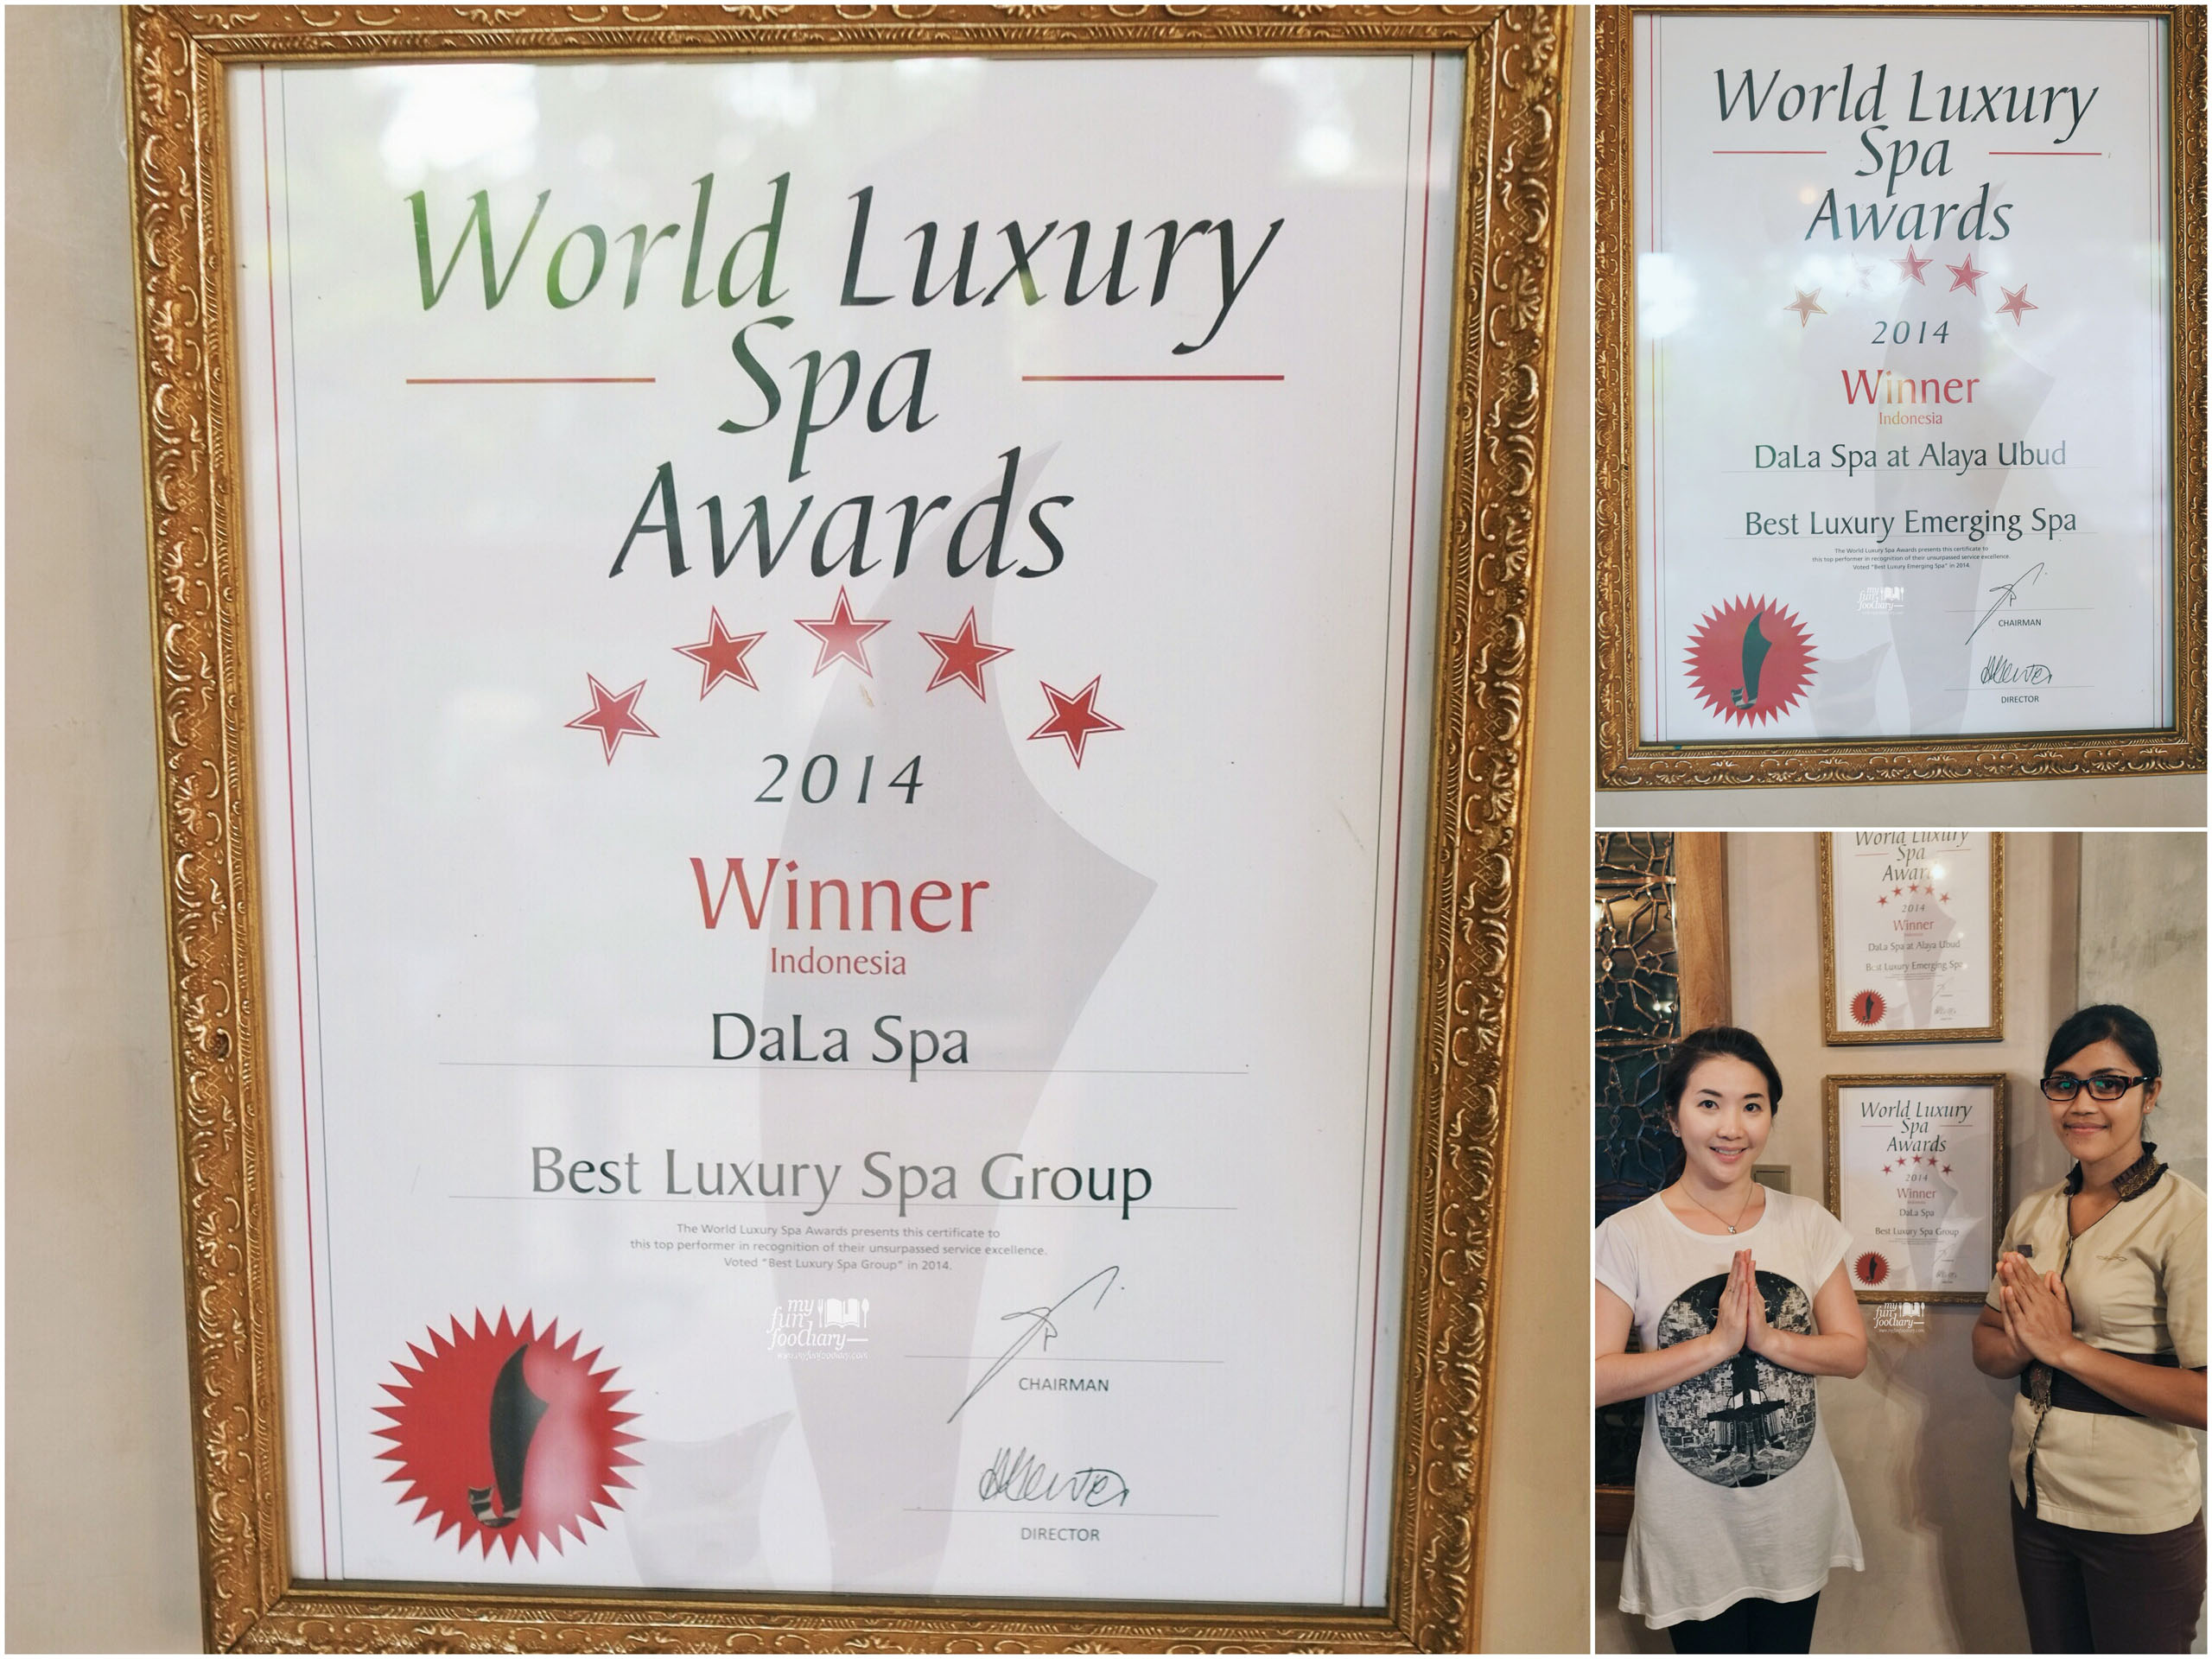 World Luxury Spa 2014 Winner at DaLa Spa Ubud by Myfunfoodiary